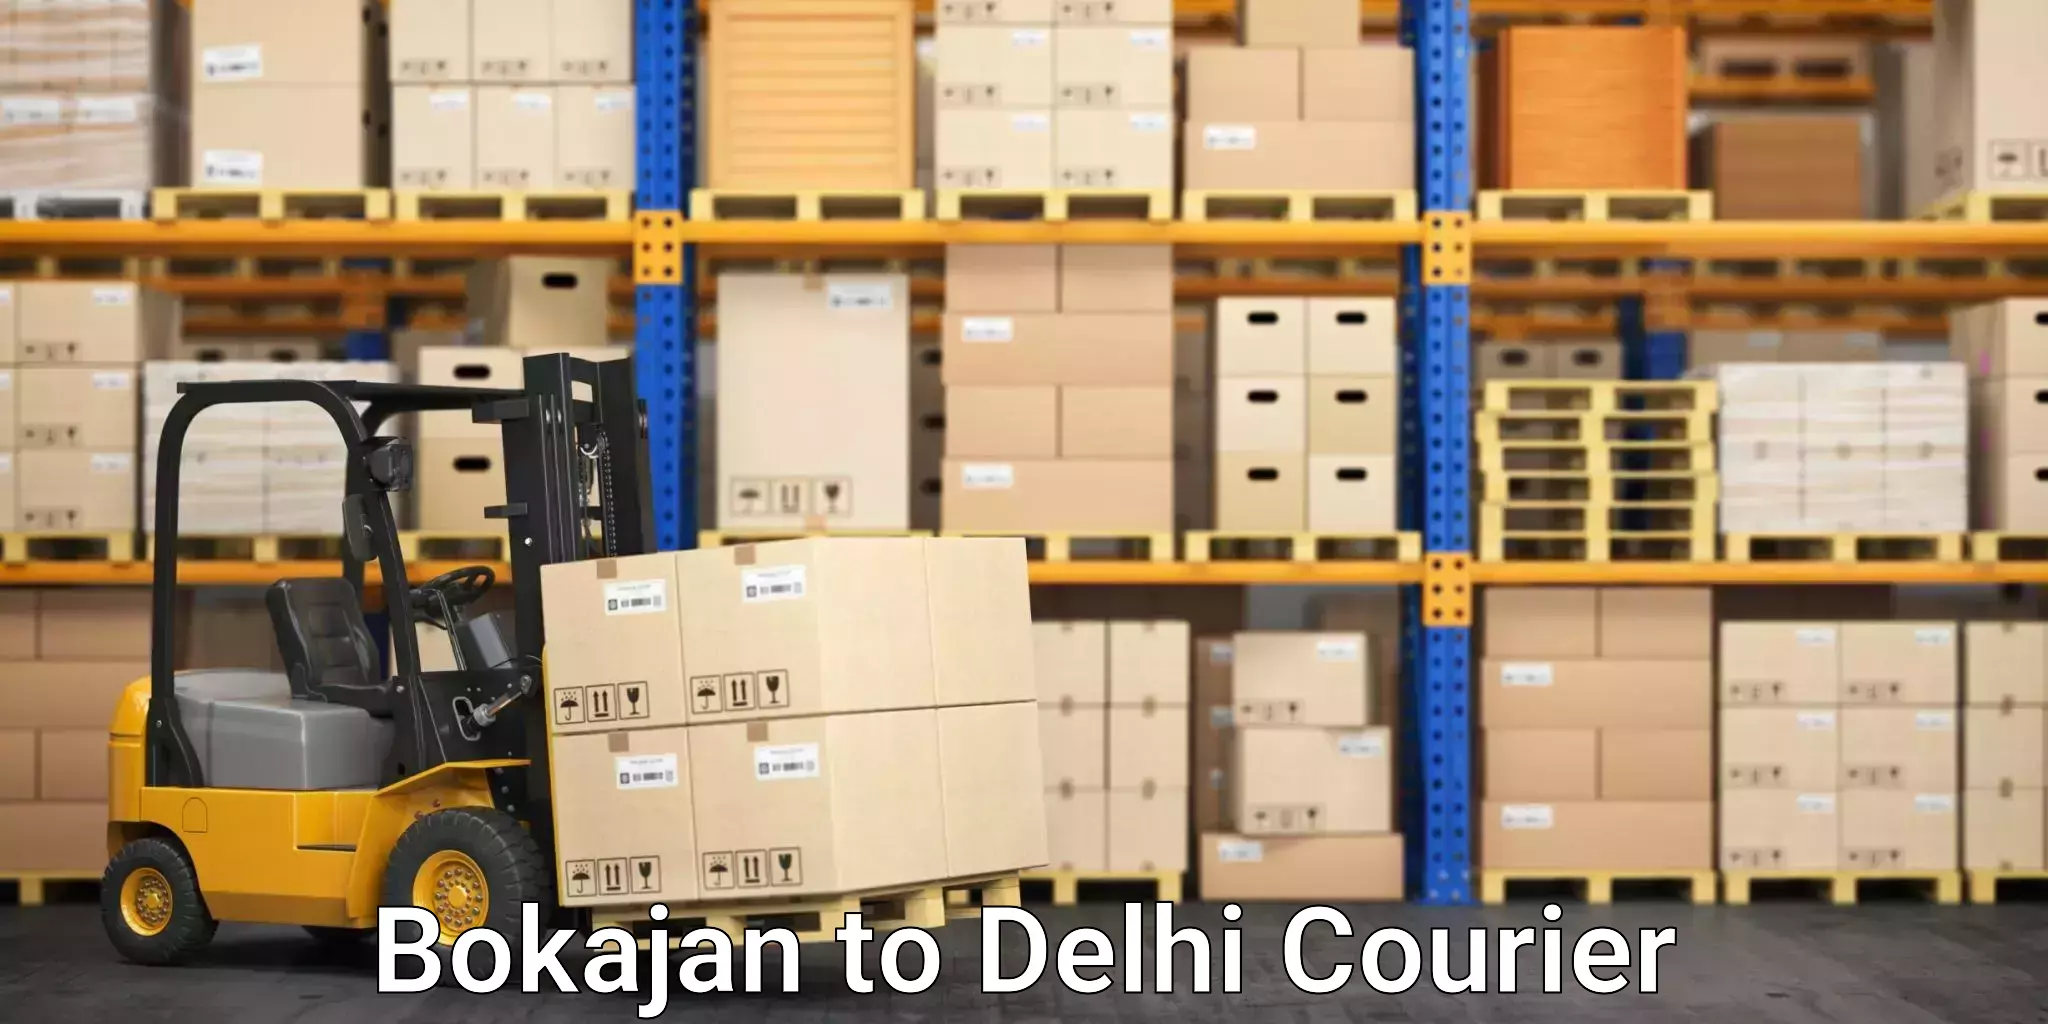 Courier service booking Bokajan to Delhi